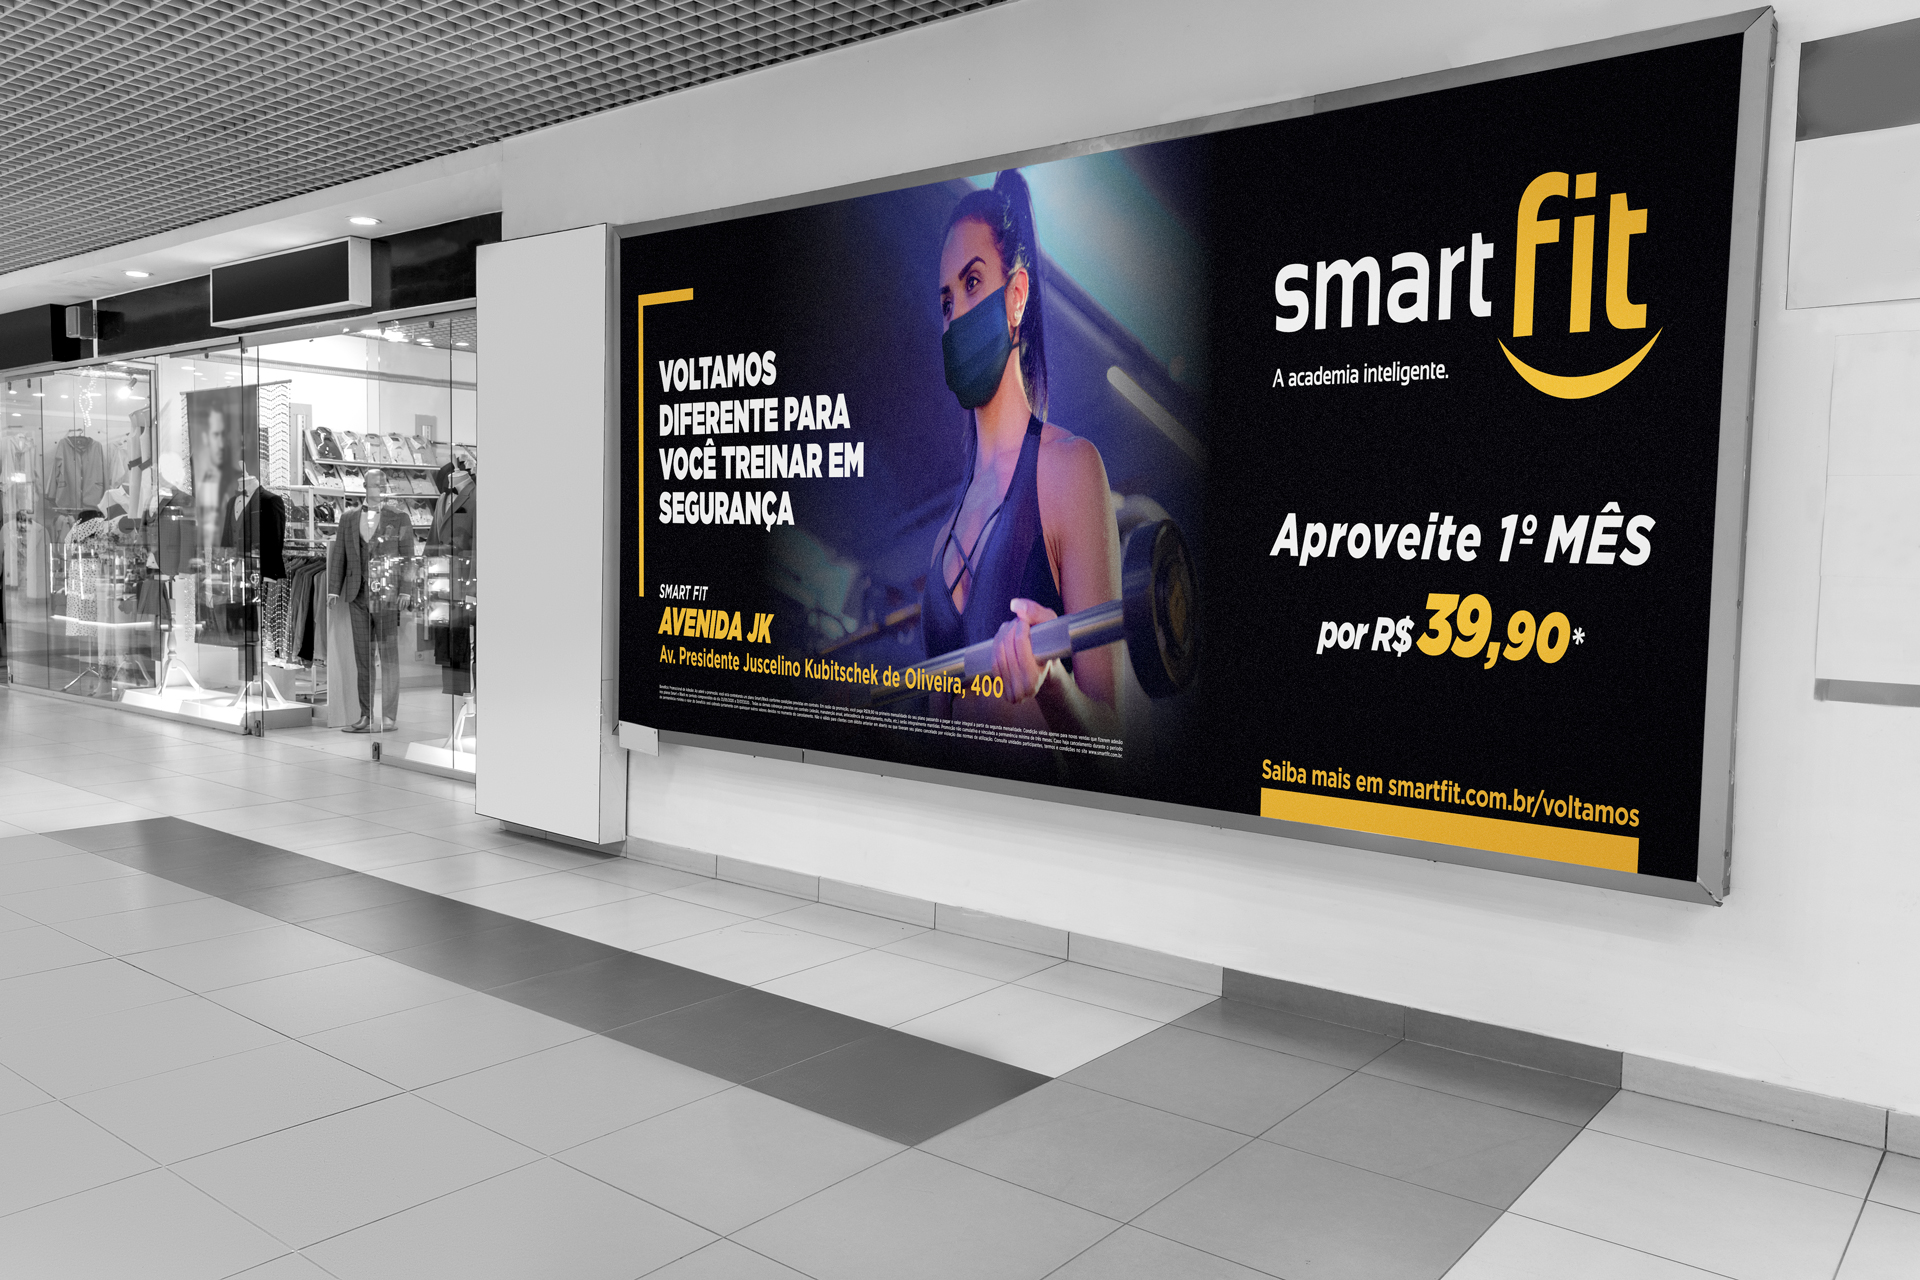 Smart Fit inaugura nova unidade na Barra da Tijuca - Diário do Rio